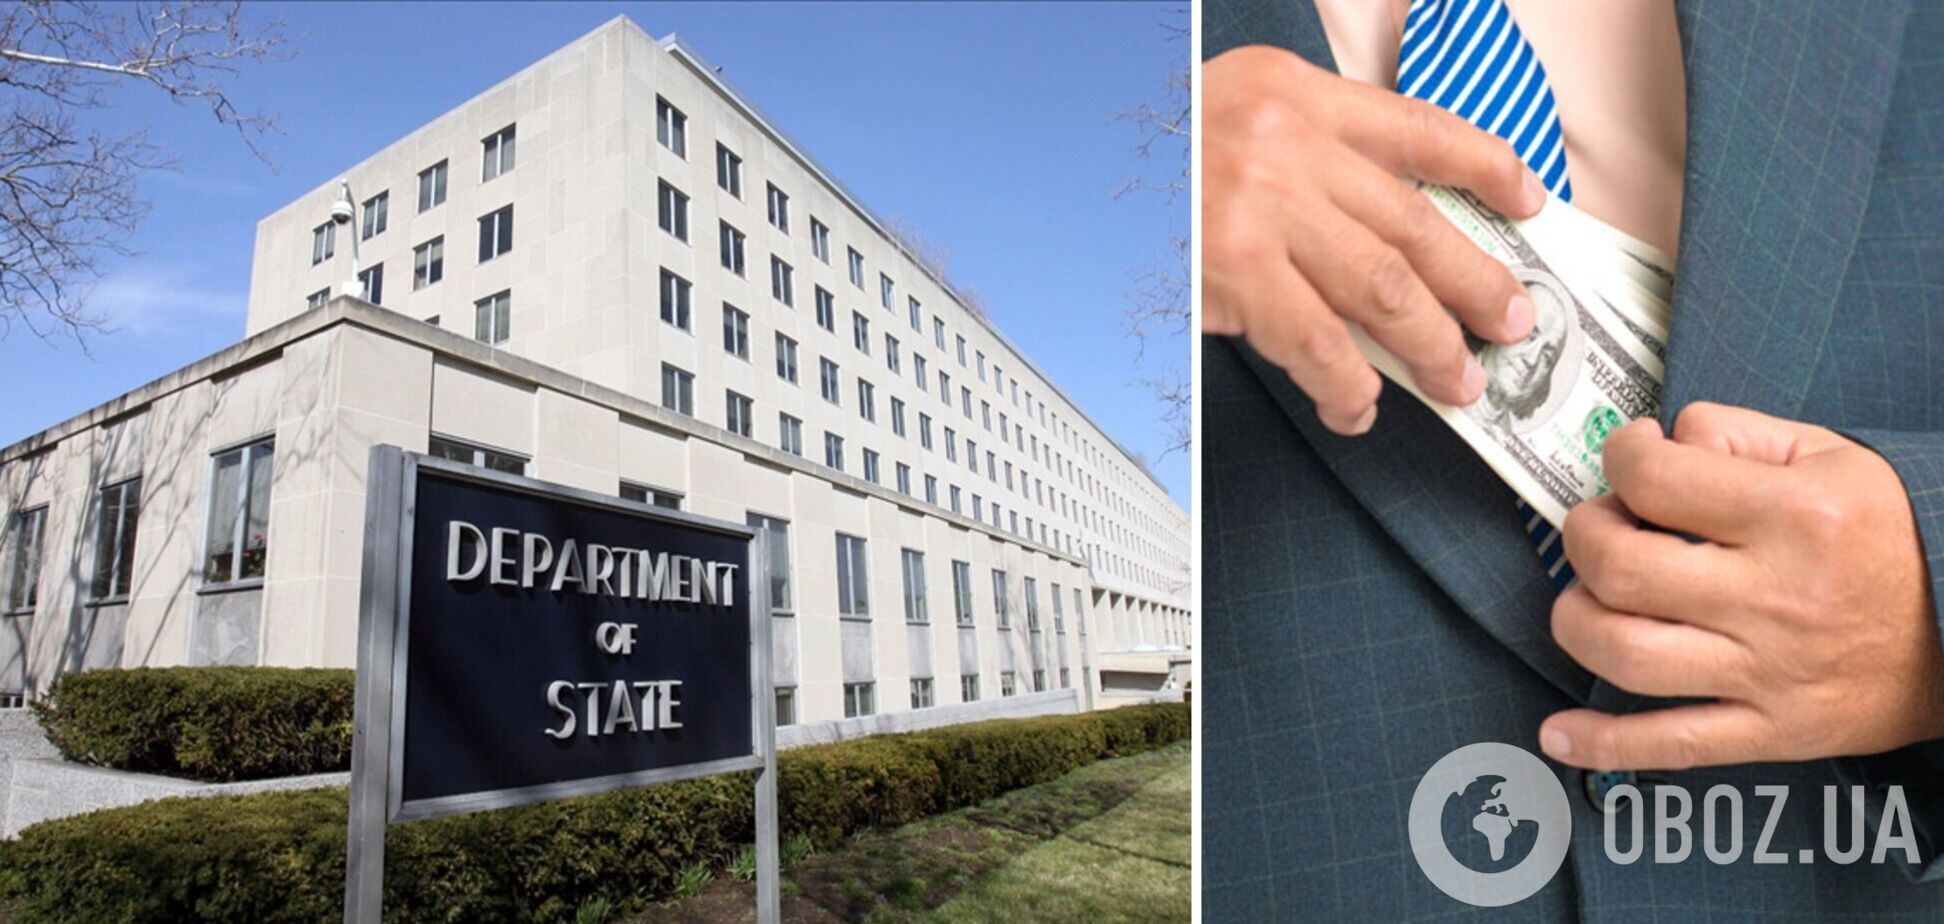 США приветствуют приверженность Украины антикоррупционным усилиям: официальное заявление